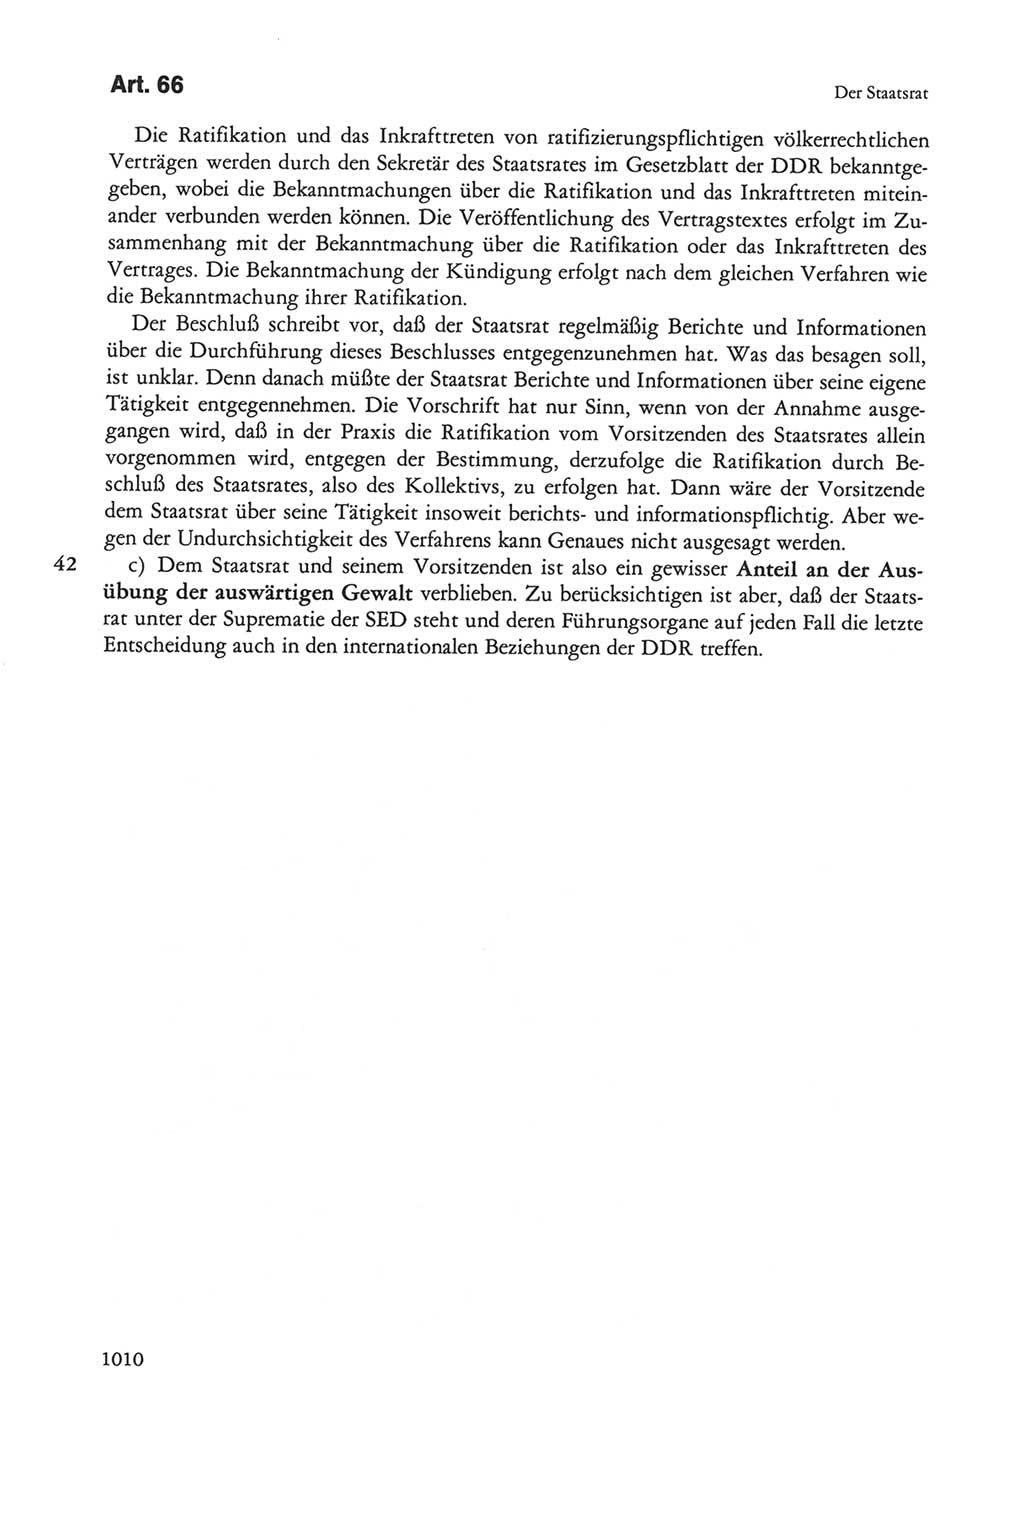 Die sozialistische Verfassung der Deutschen Demokratischen Republik (DDR), Kommentar 1982, Seite 1010 (Soz. Verf. DDR Komm. 1982, S. 1010)